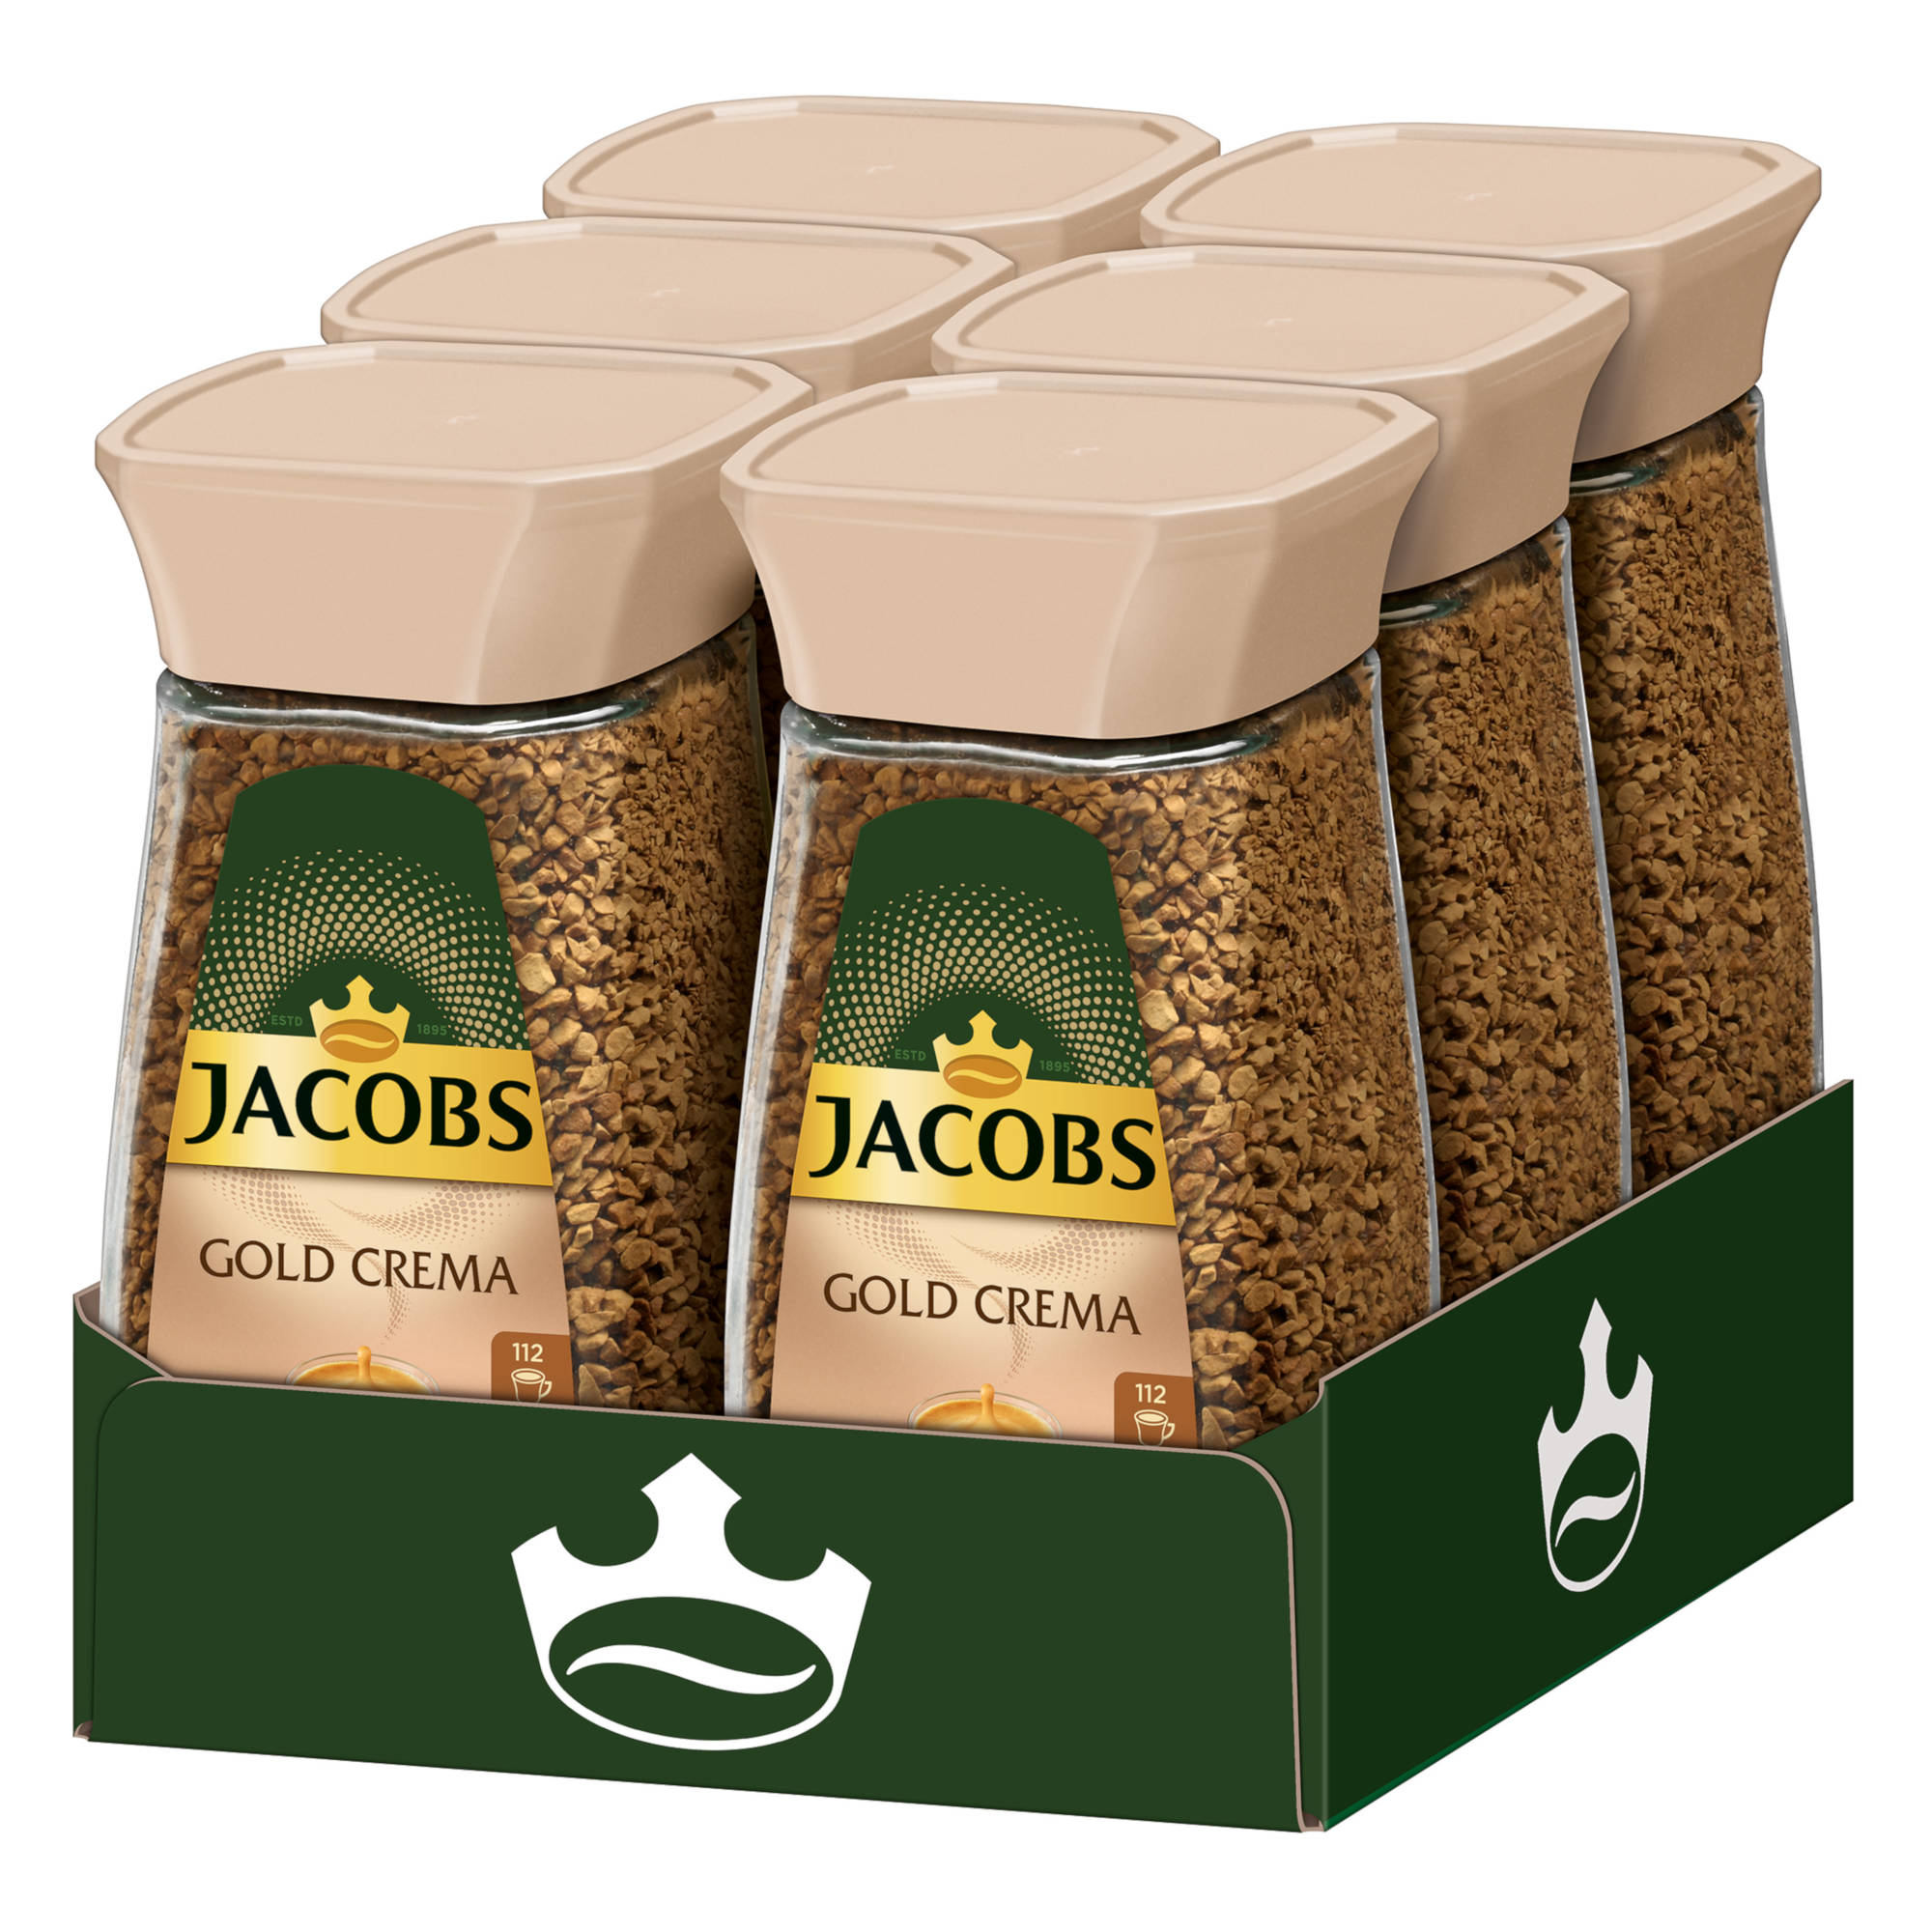 JACOBS Gold Crema 6 x auflösen) g Wasser heißem 200 Kaffee löslicher (In Gläser